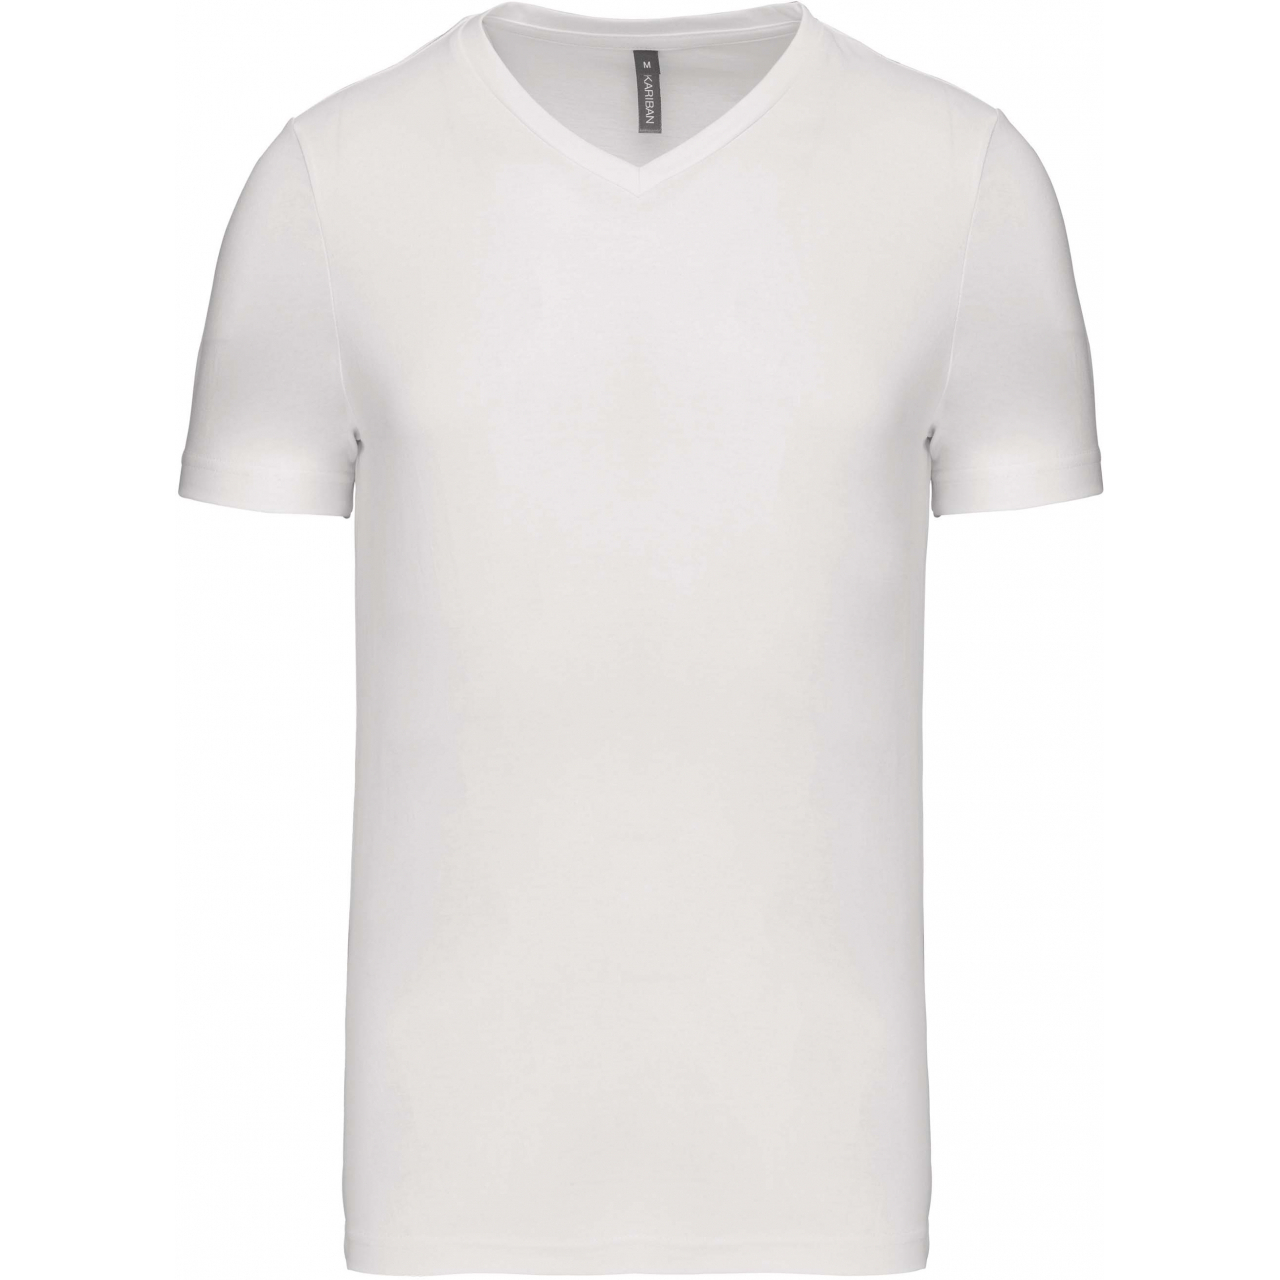 Pánské tričko Kariban krátký rukáv V-neck - bílé, XL